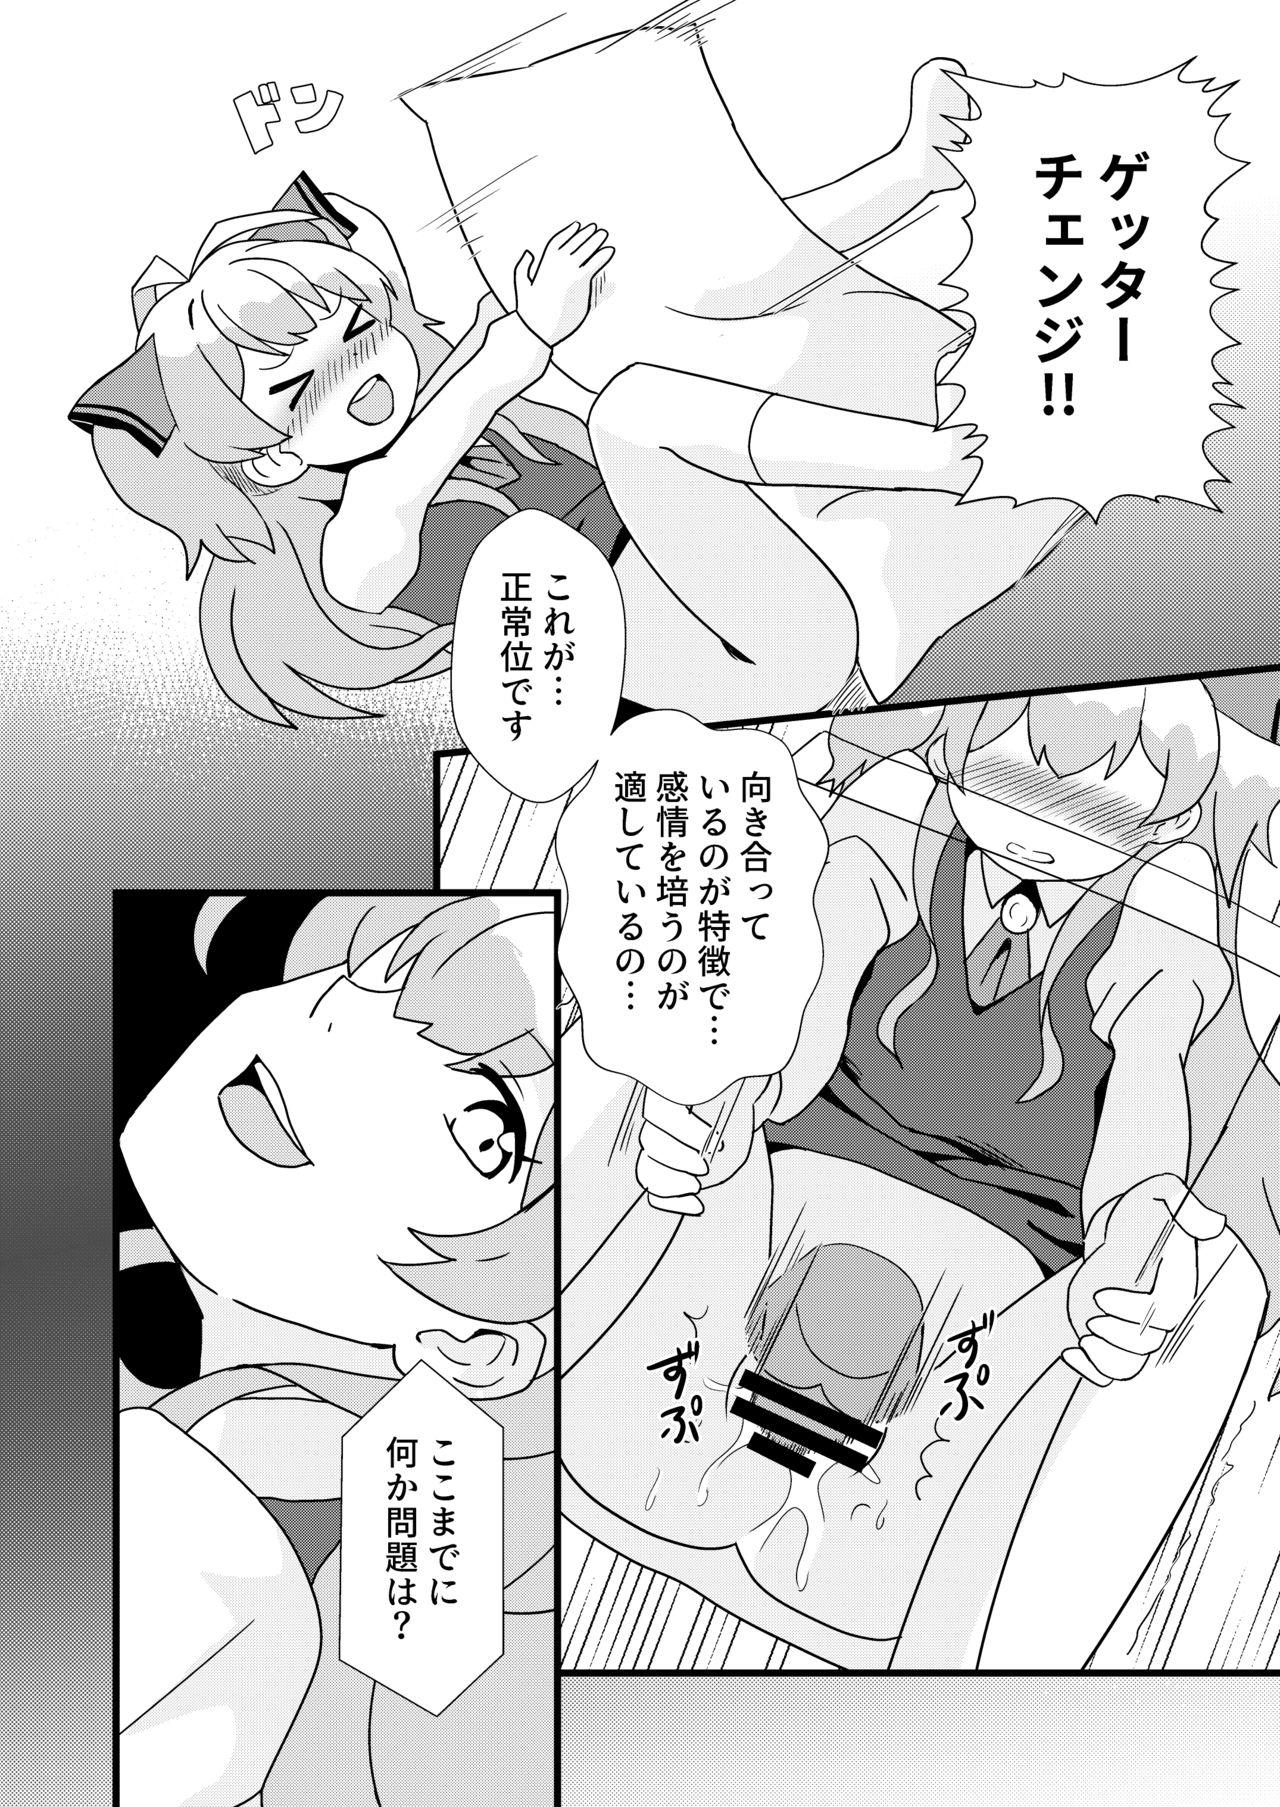 Softcore Watashi, Seiyoku wa Heikinchi de tte Itta yo ne! - Watashi nouryoku wa heikinchi de tte itta yo ne Dorm - Page 11